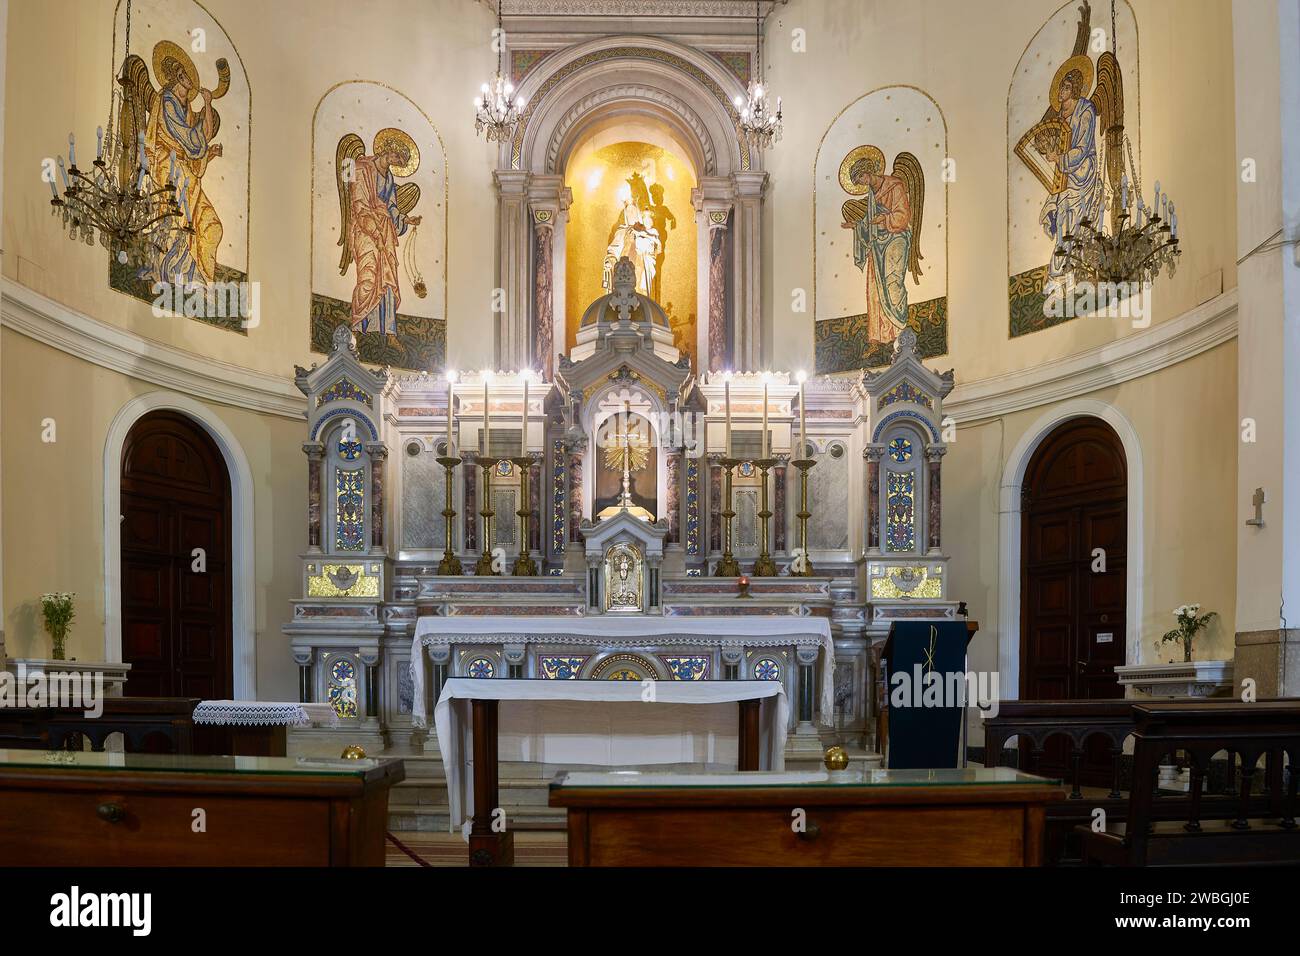 All'interno di una chiesa cattolica all'altare maggiore, dove è possibile vedere sculture religiose come angeli e Gesù Cristo. Sala di preghiera. Foto Stock